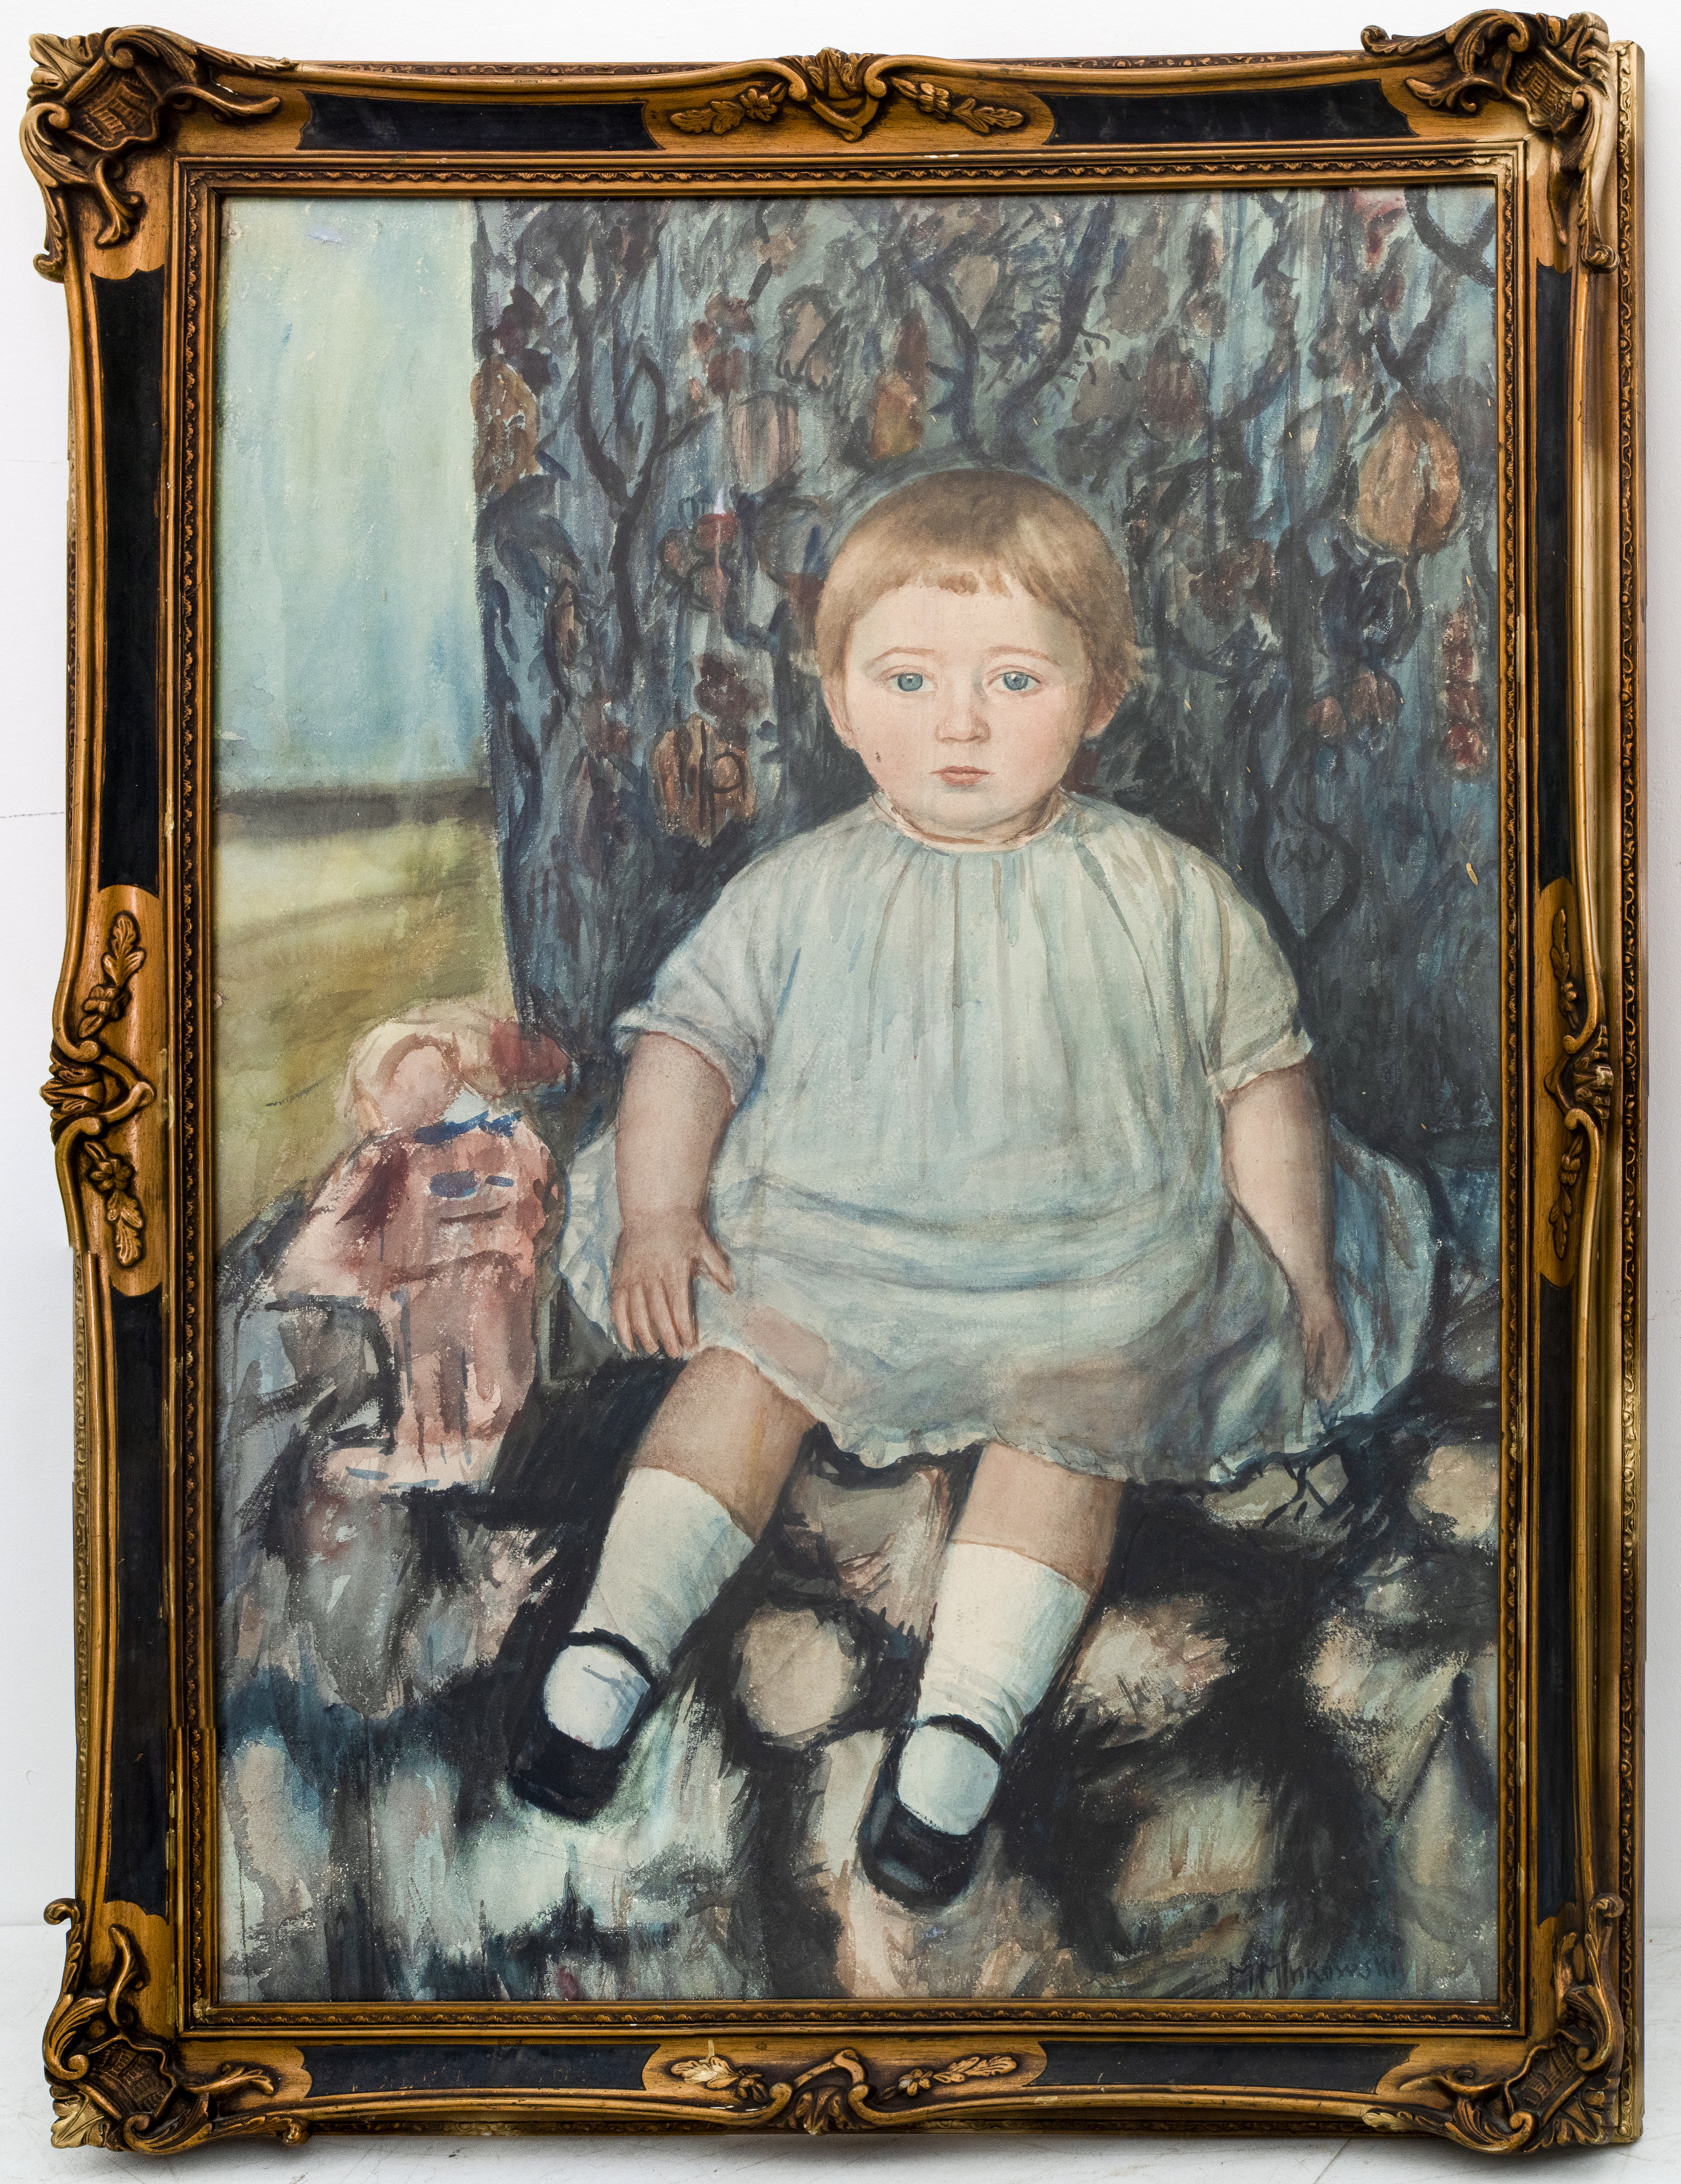 MINKOWSKI 'PORTRAIT OF AN INFANT'